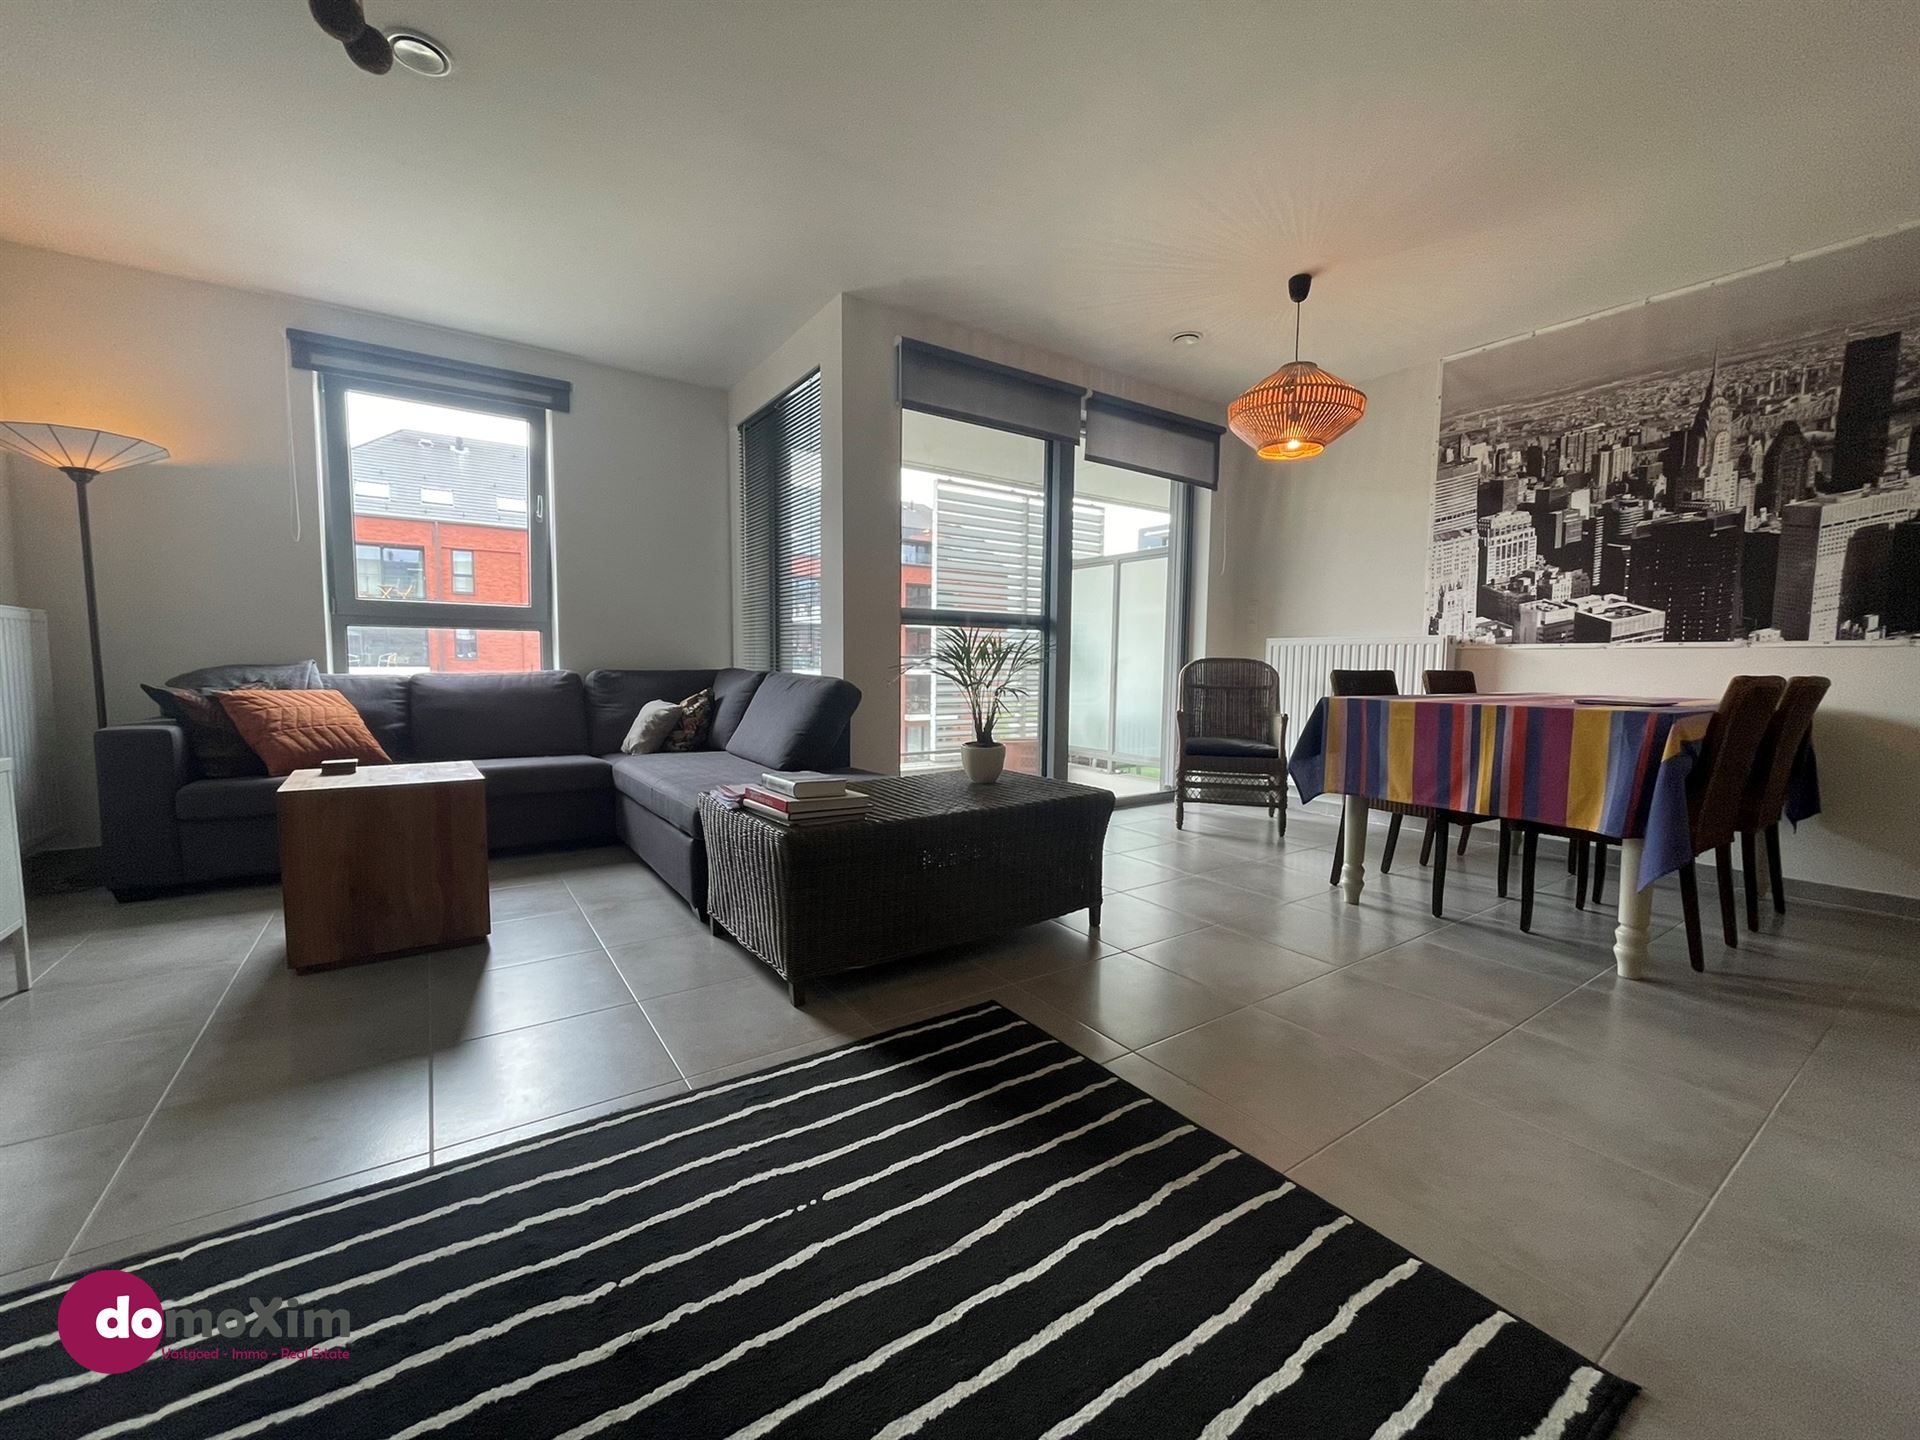 Lichtrijk appartement met 2 slaapkamers in hartje Boortmeerbeek foto 2